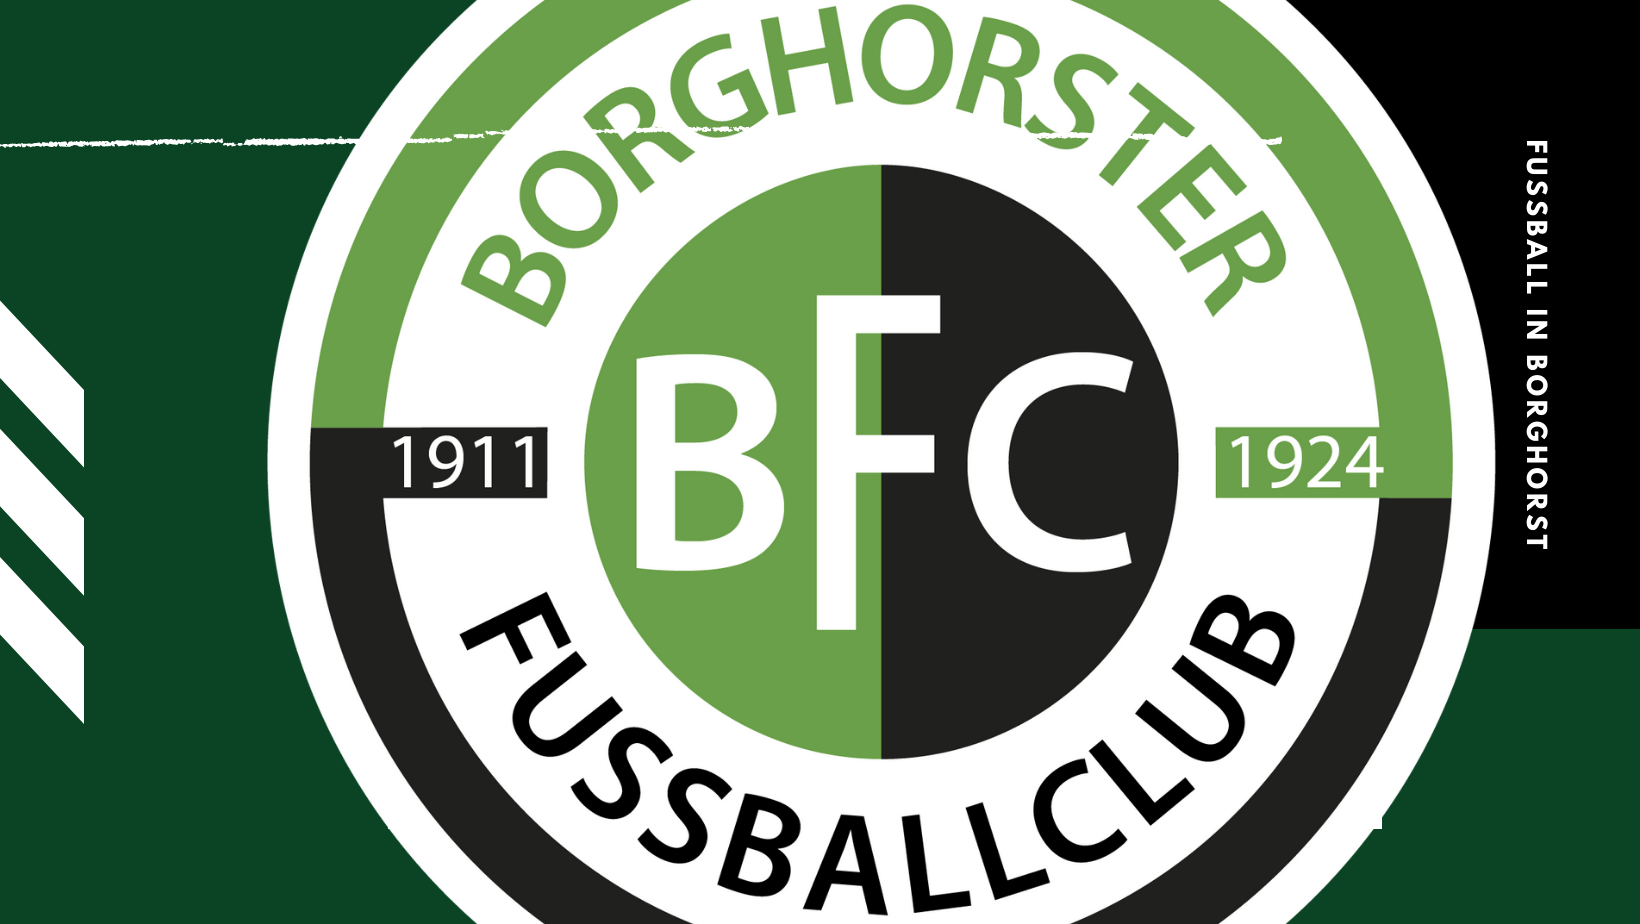 Trainerliste 2023/24 | Borghorster FC 1911/1924 e